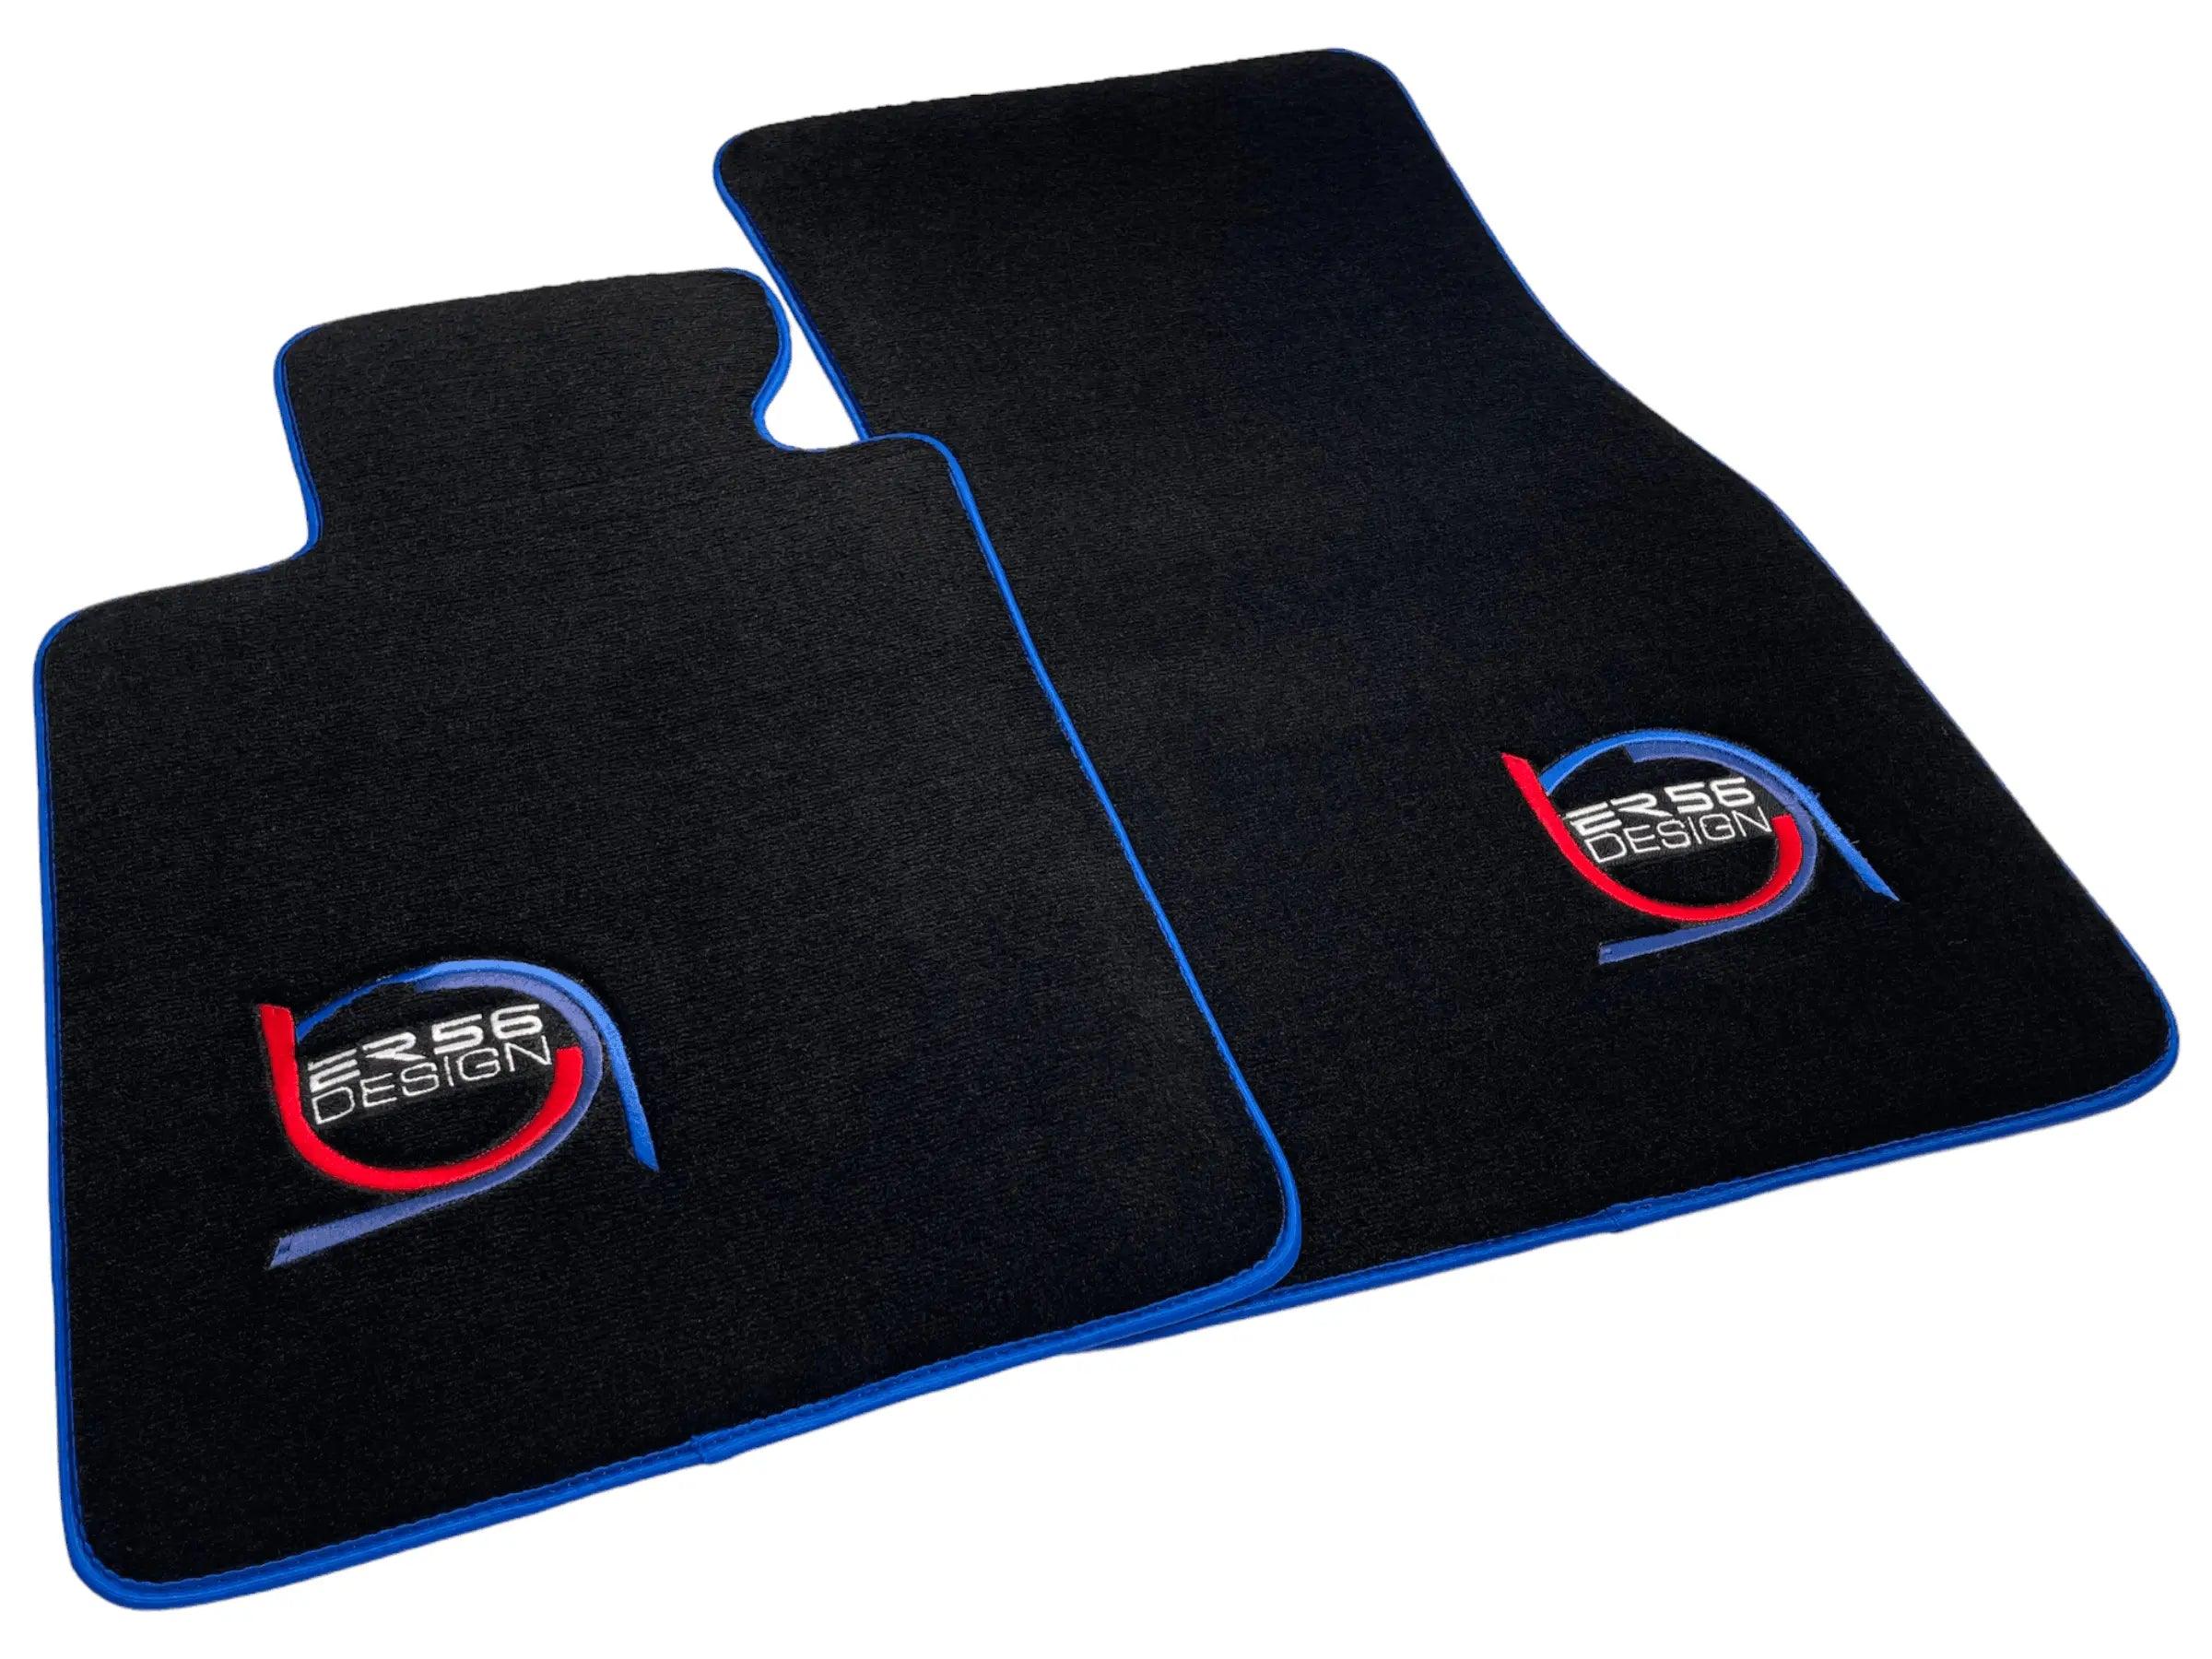 Black Floor Mats For BMW M3 E92 ER56 Design Limited Edition Blue Trim - AutoWin